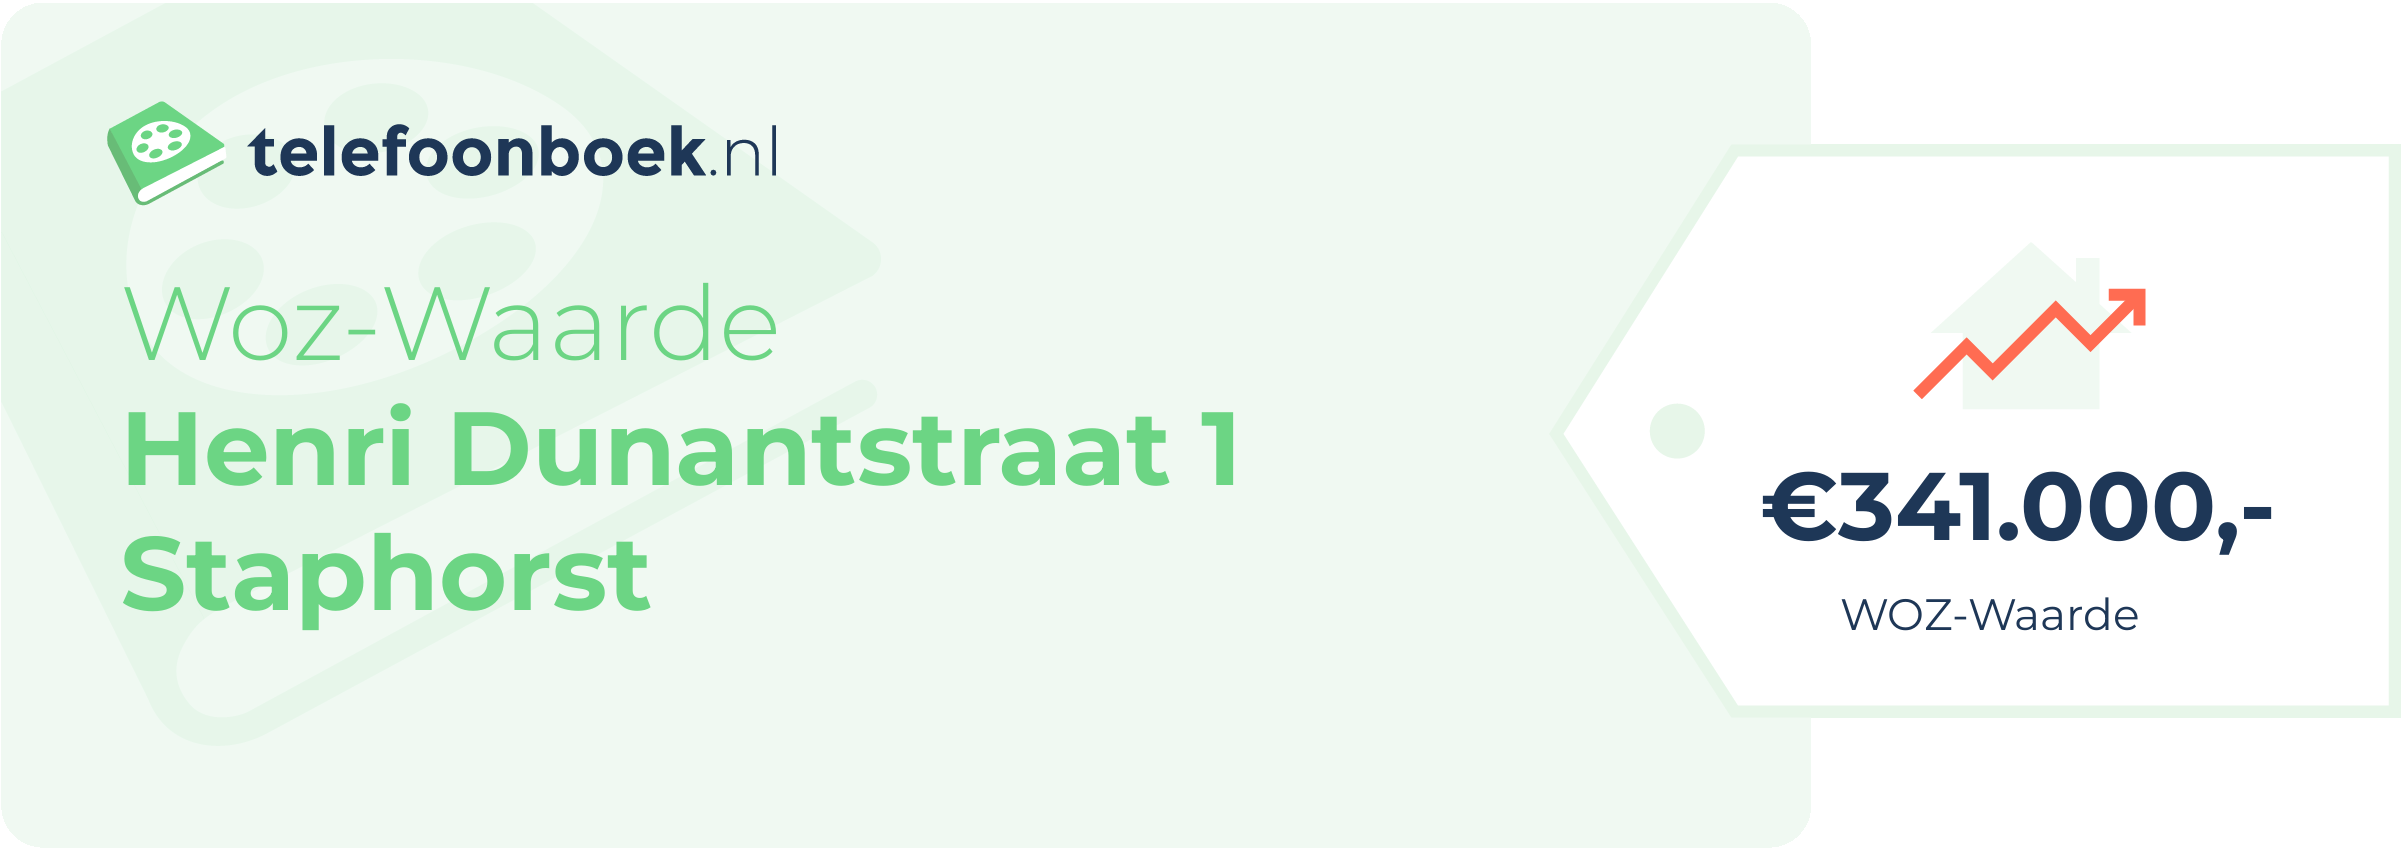 WOZ-waarde Henri Dunantstraat 1 Staphorst